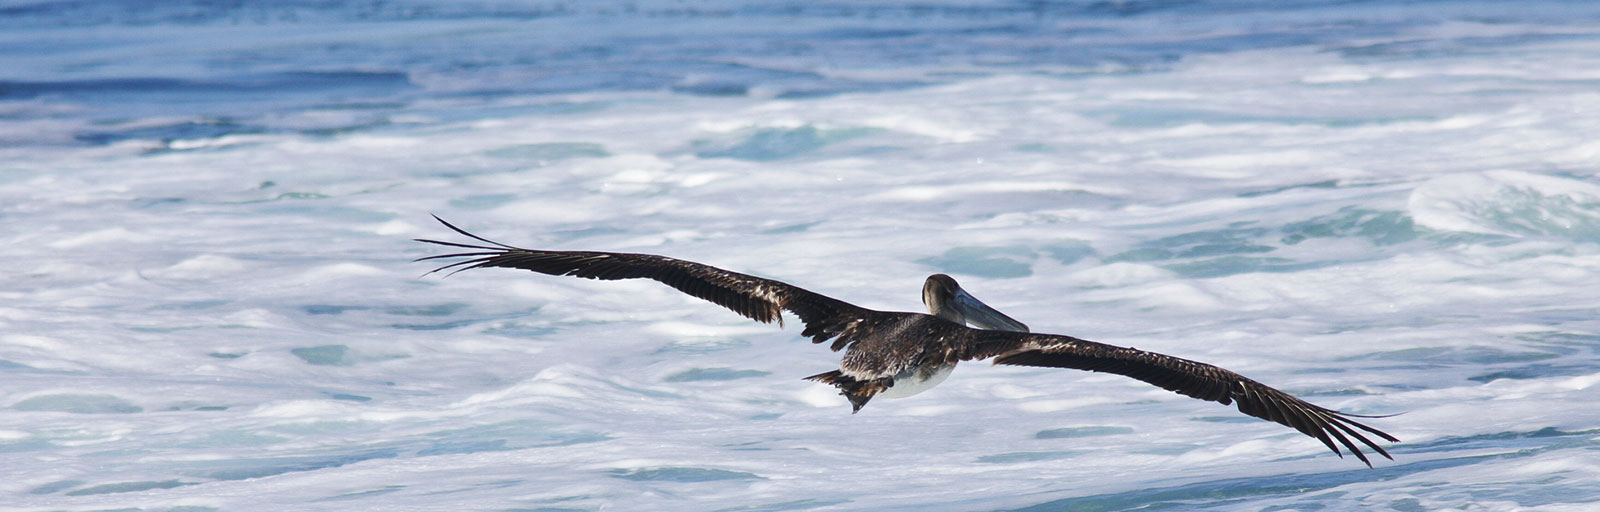 Yoga Retreat Scenics: Pelican Soars over Sea Foam